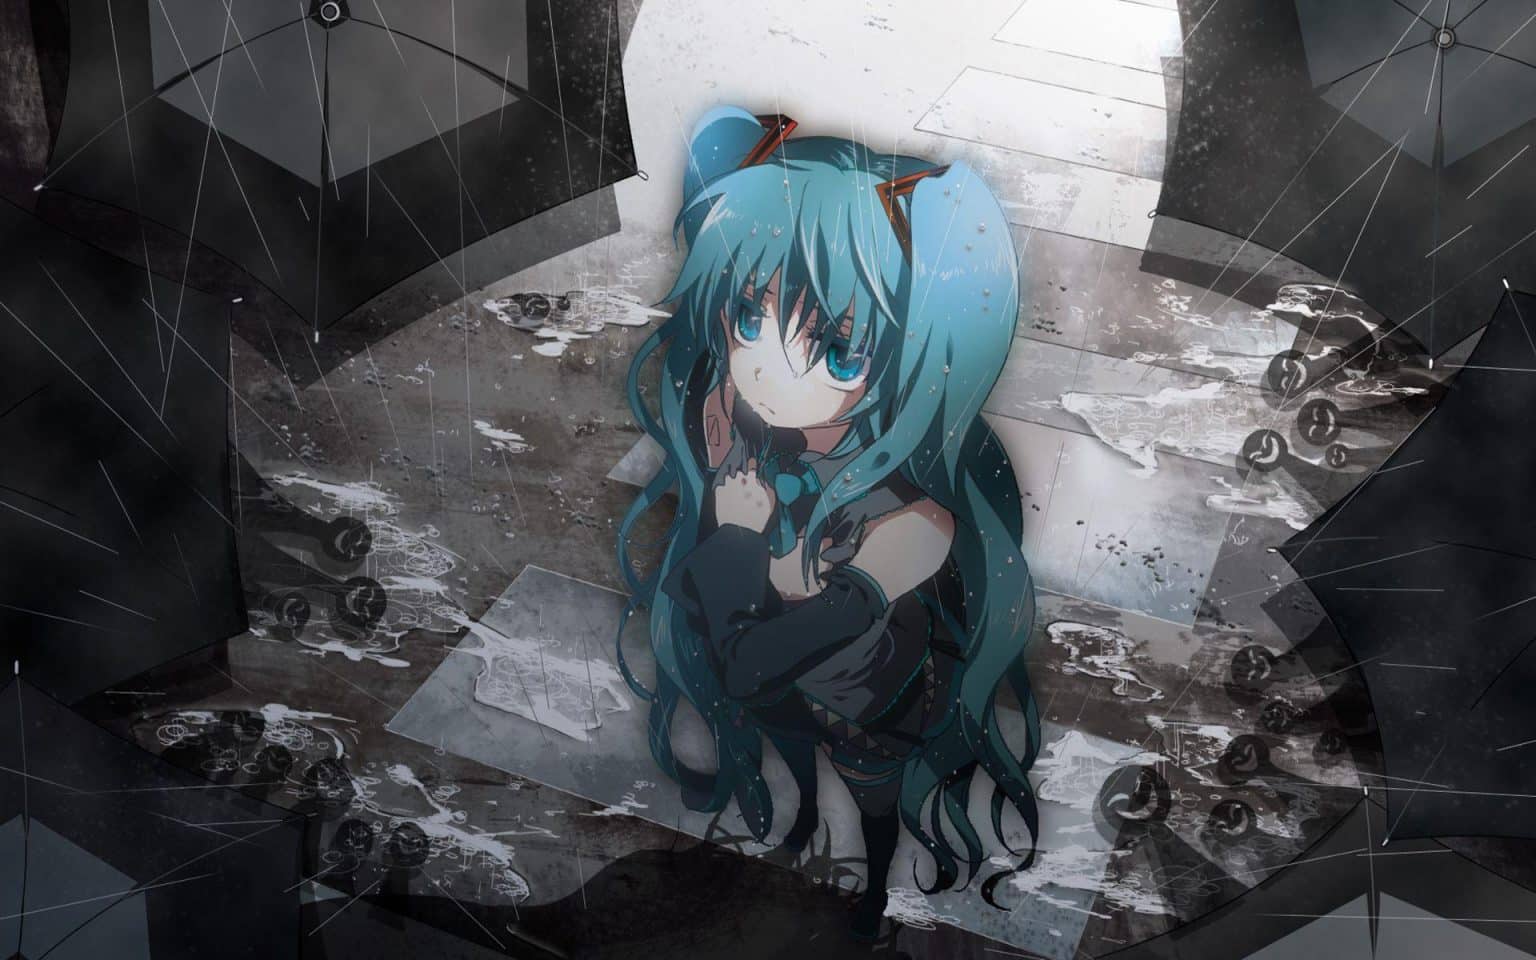 Hình Anime Nữ Bùi ngùi ngồi 1 mình bên dưới mưa